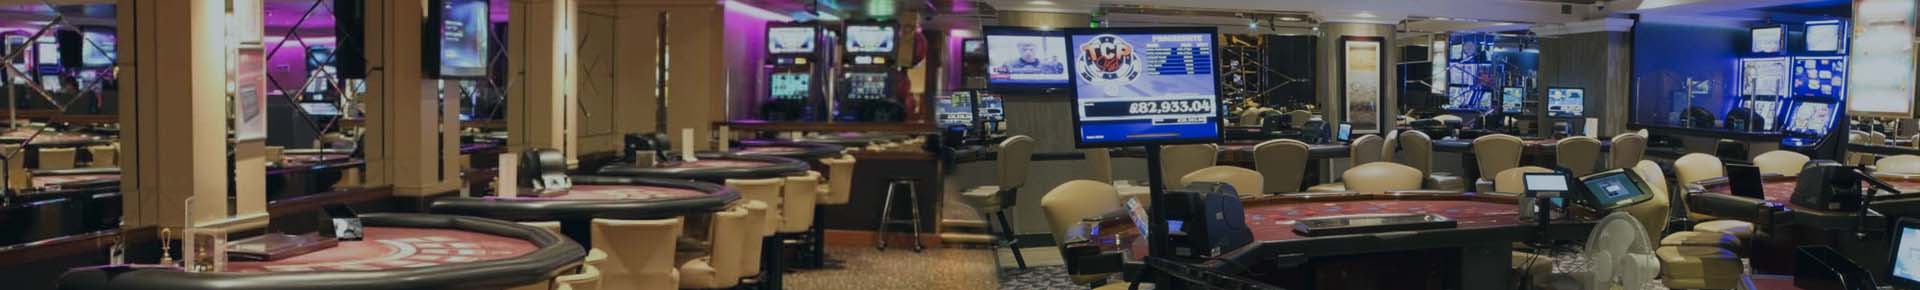 10 Ecu Bonus Bloß casumo casino online seriös Einzahlung Kasino